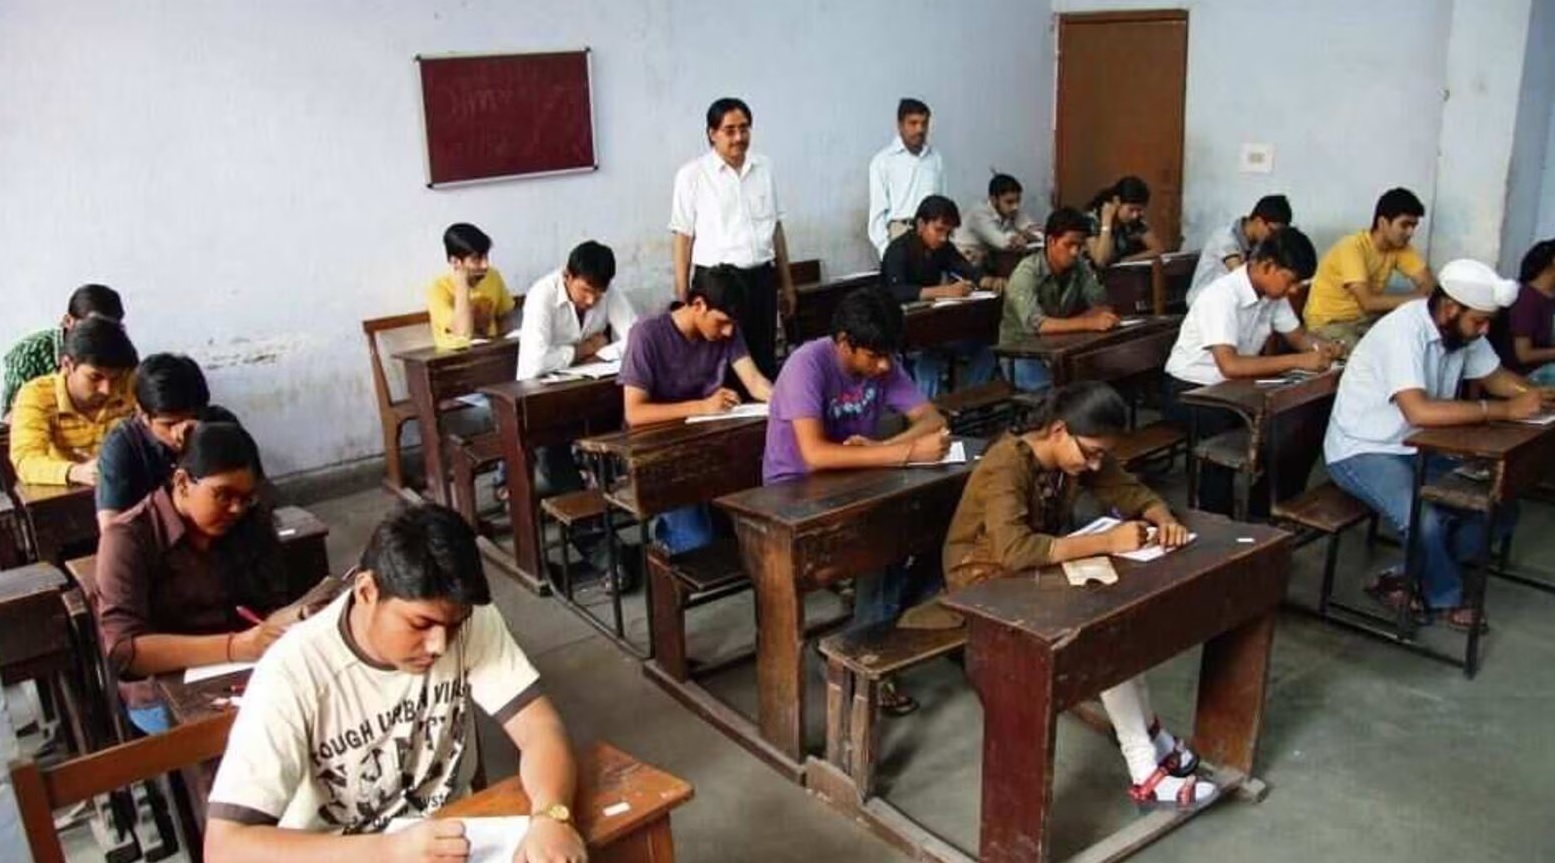 اتر پردیش کے طلباء کو امتحان میں 'جئے شری رام' اور کرکیٹرز کے نام لکھنے پر 50 فیصد نمبر ہوئے حاصل 